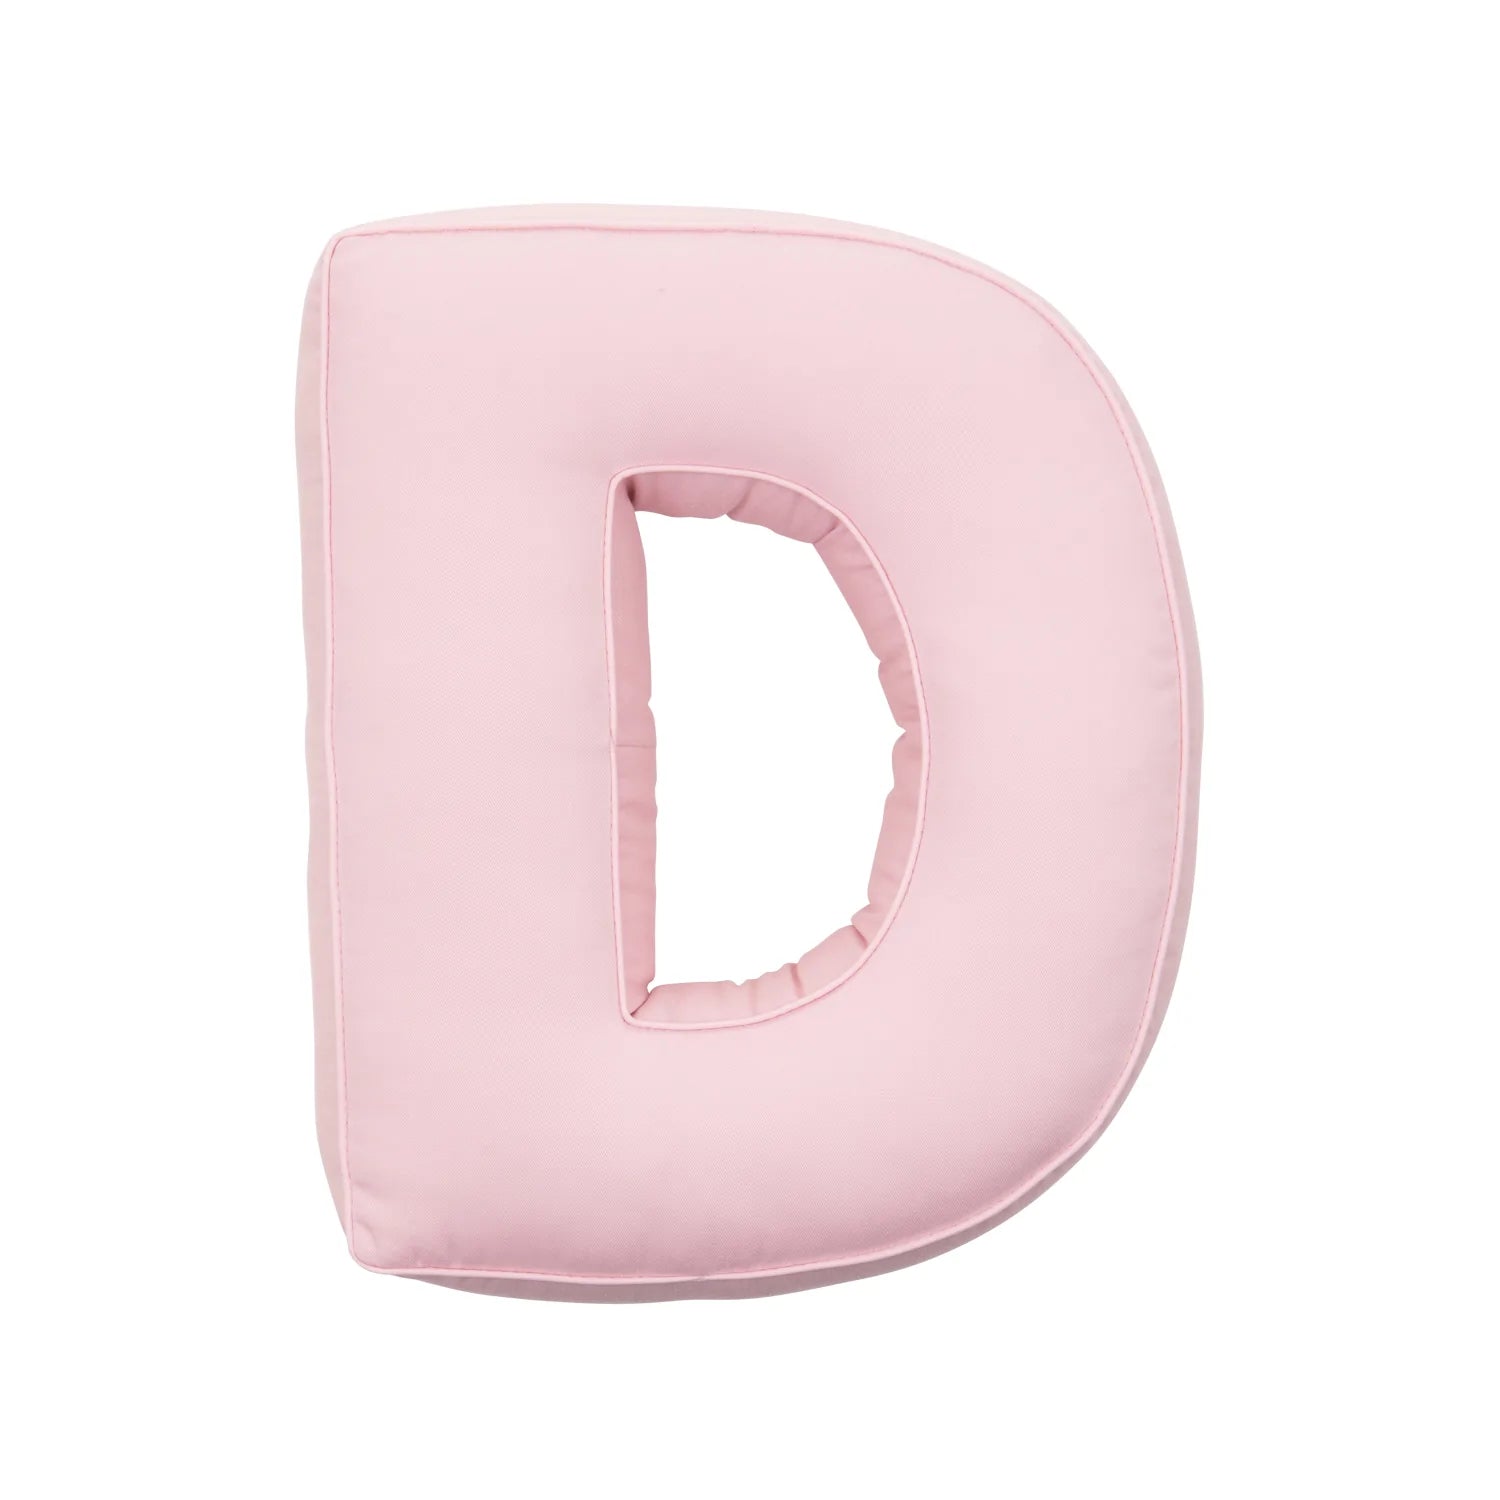 Cuscini a lettere in cotone rosa